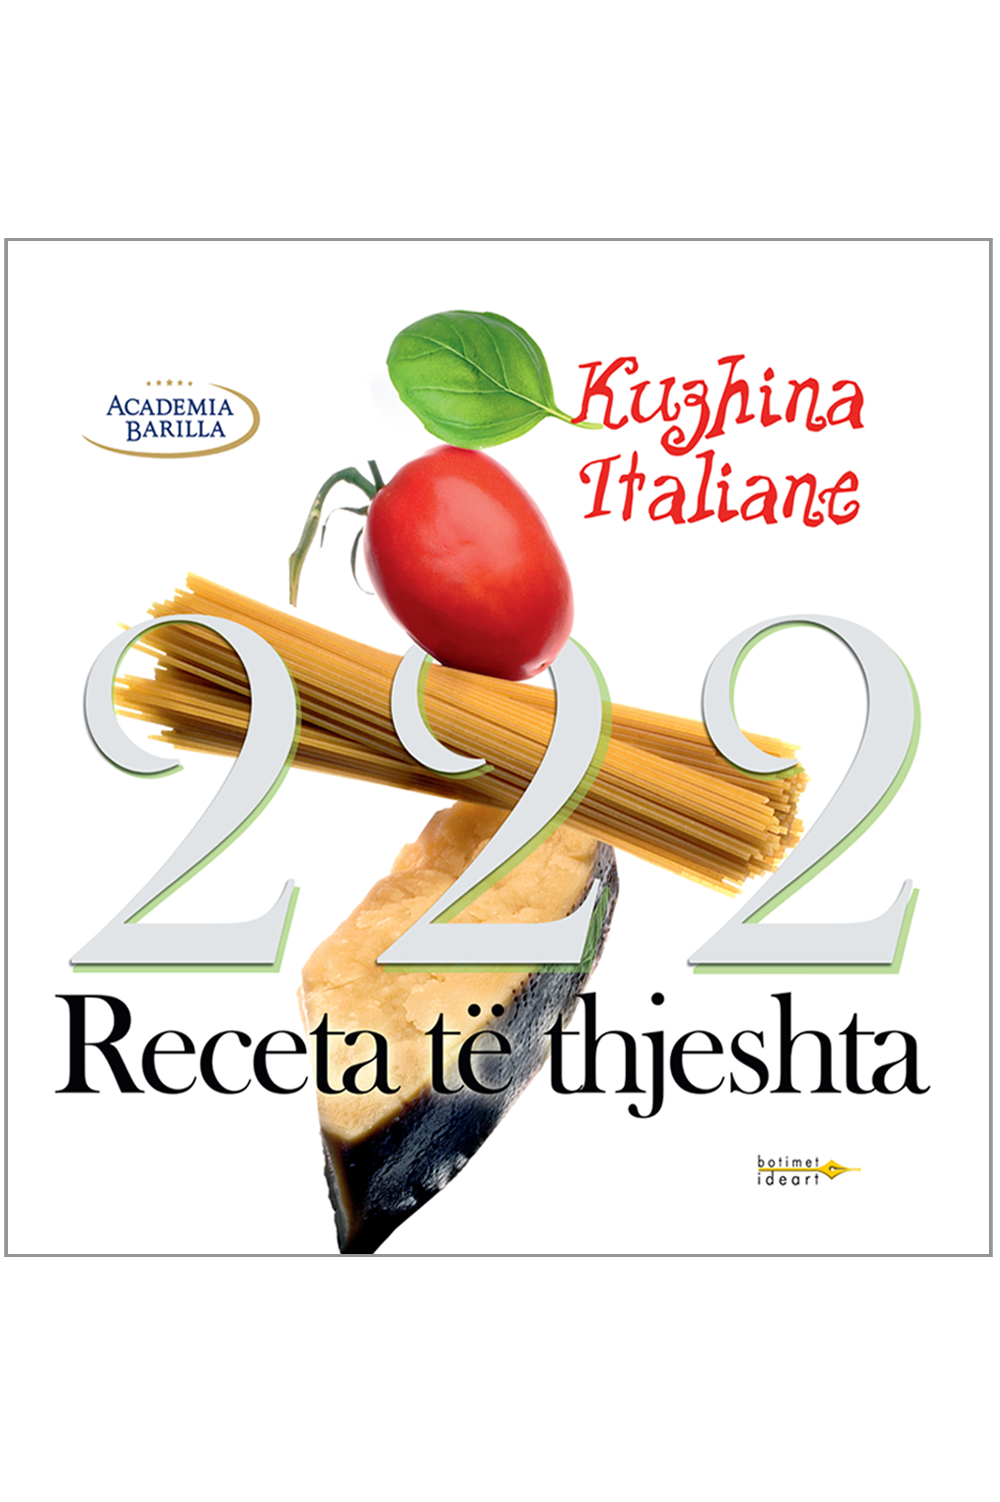 222 Receta të thjeshta "Kuzhina Italine"